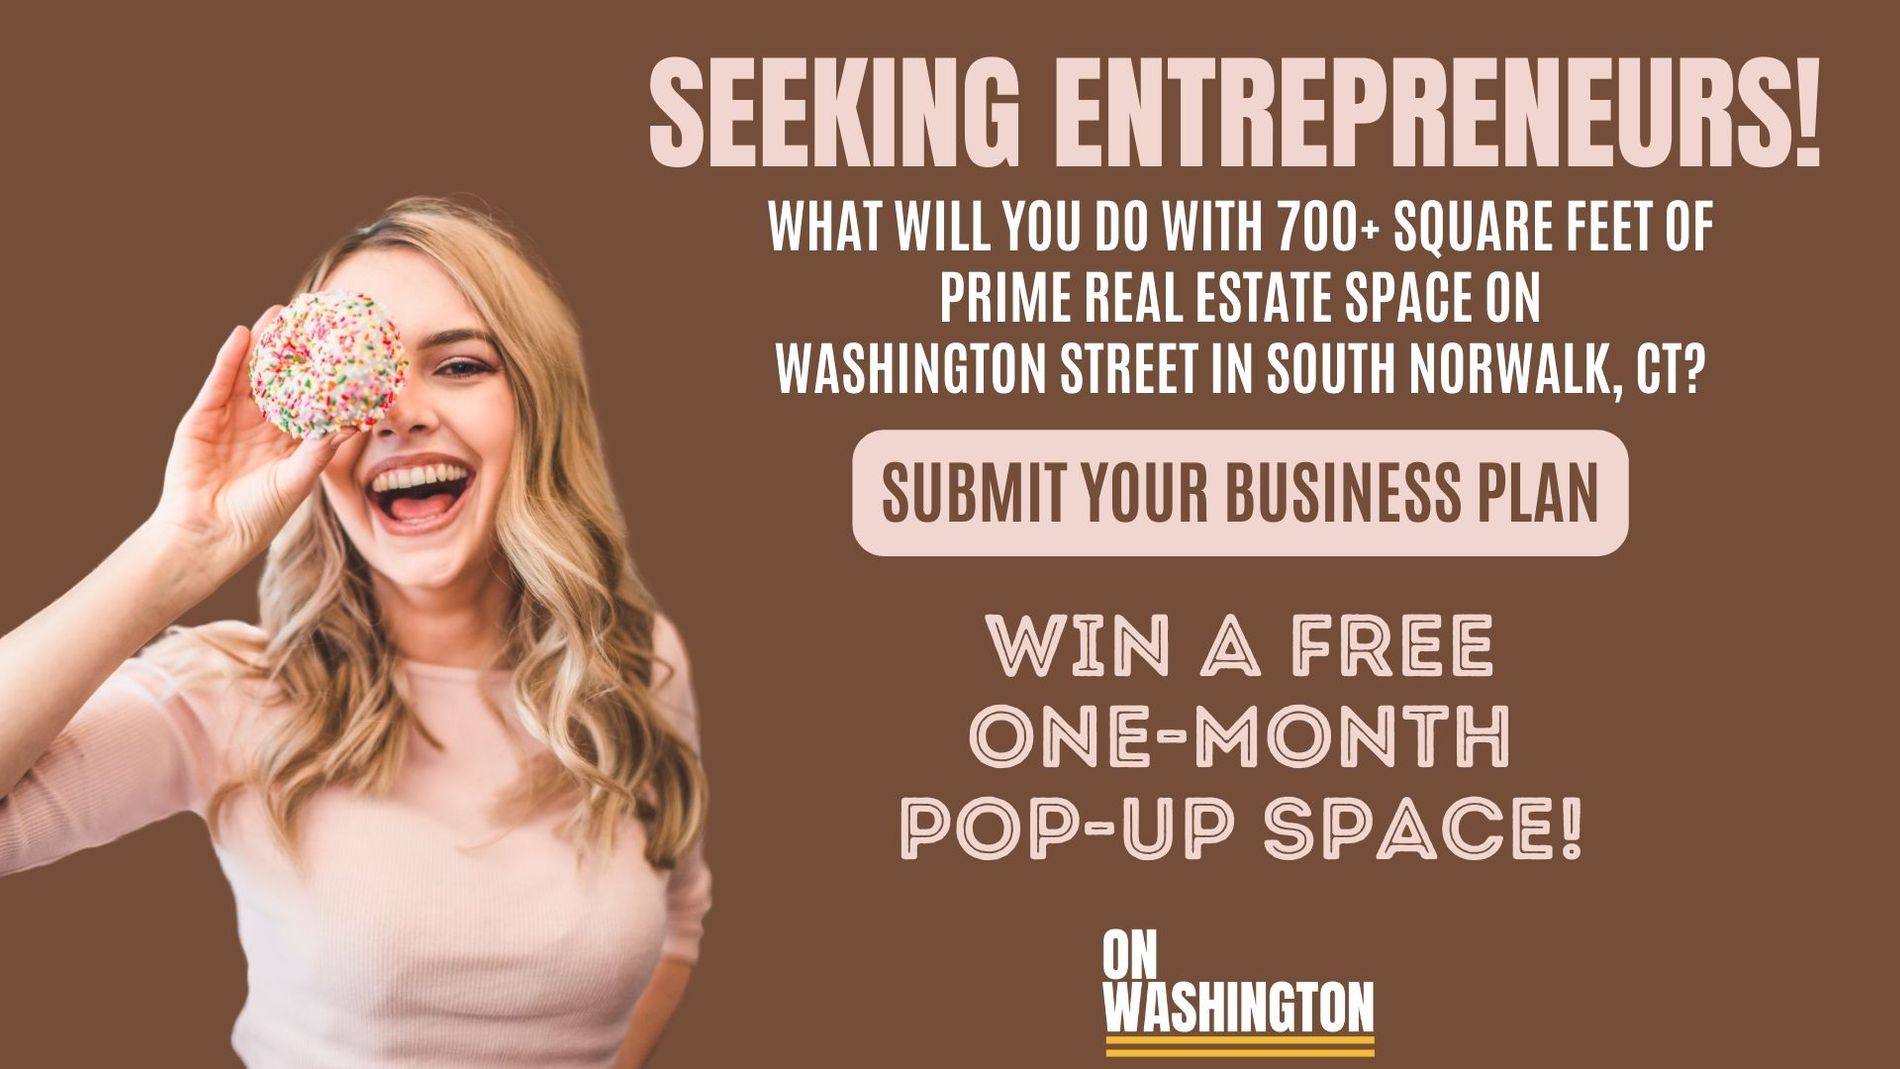 OnWashington Celebrates the Entrepreneurial Spirit 2.0